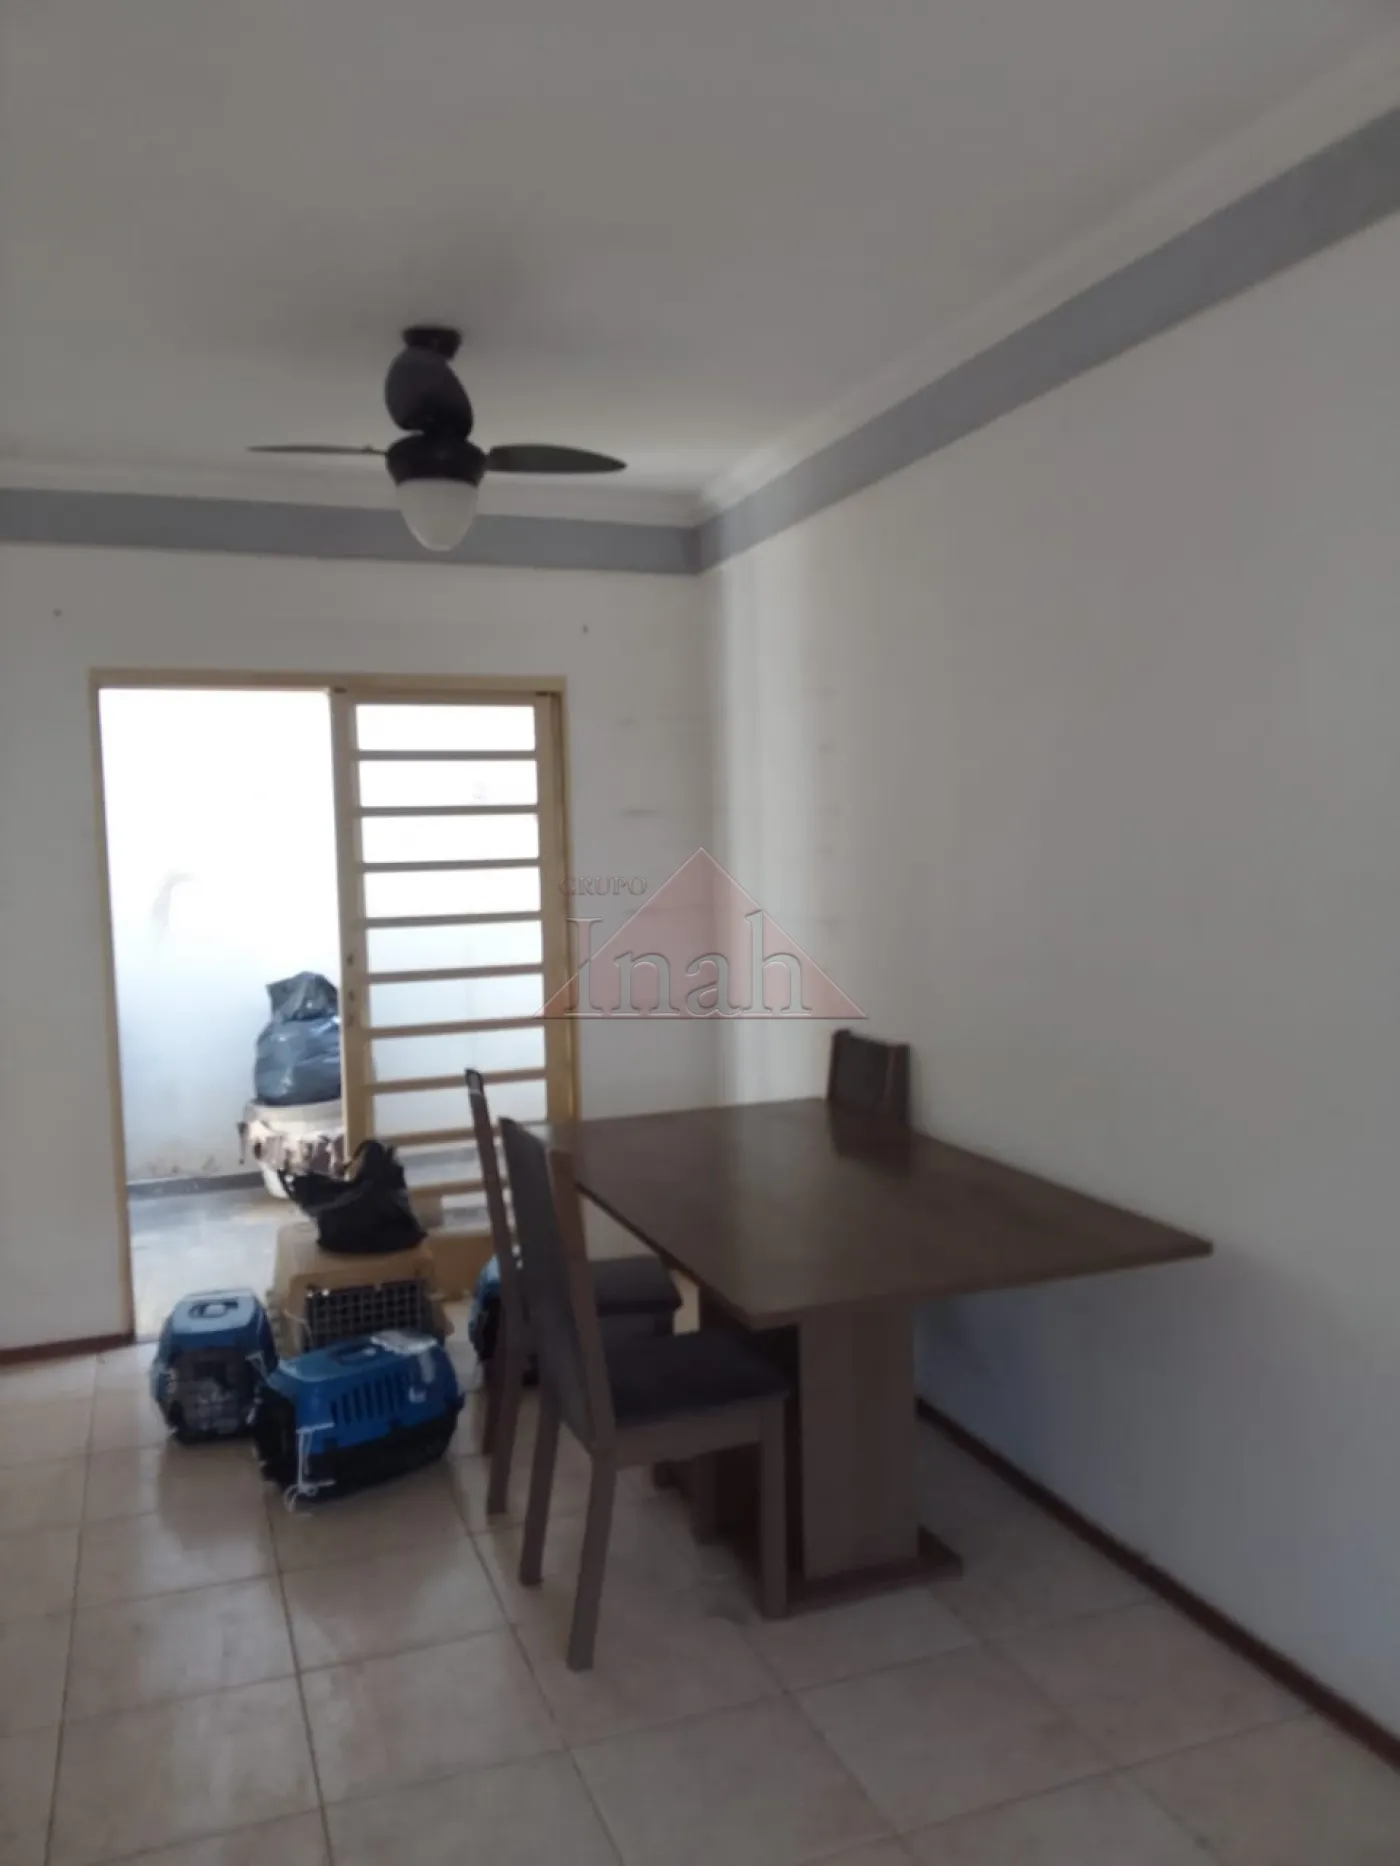 Alugar Casas / condomínio fechado em Ribeirão Preto R$ 950,00 - Foto 10